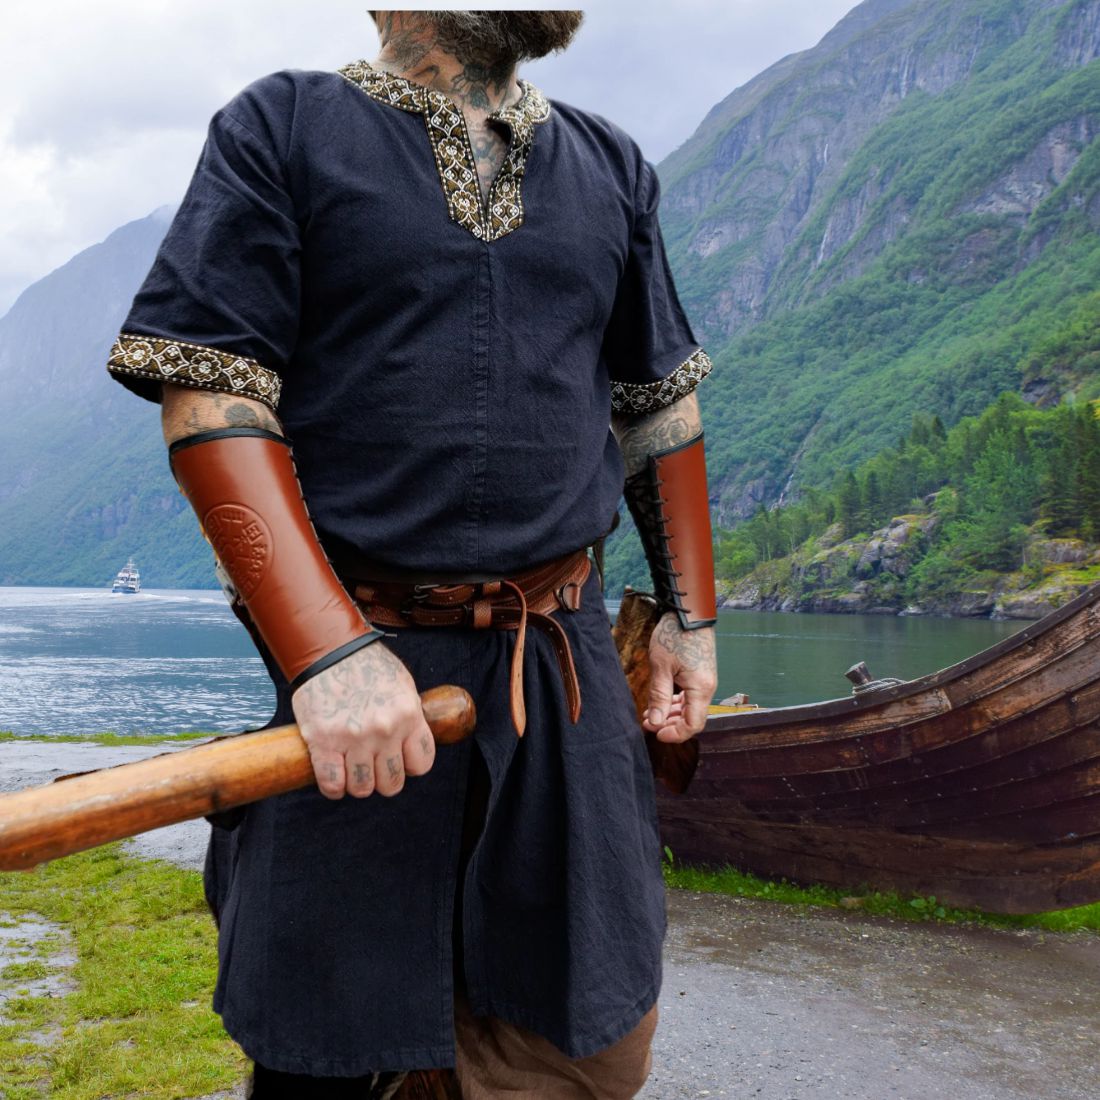 Viking Tunics & Shirts - Authentic Viking Clothing